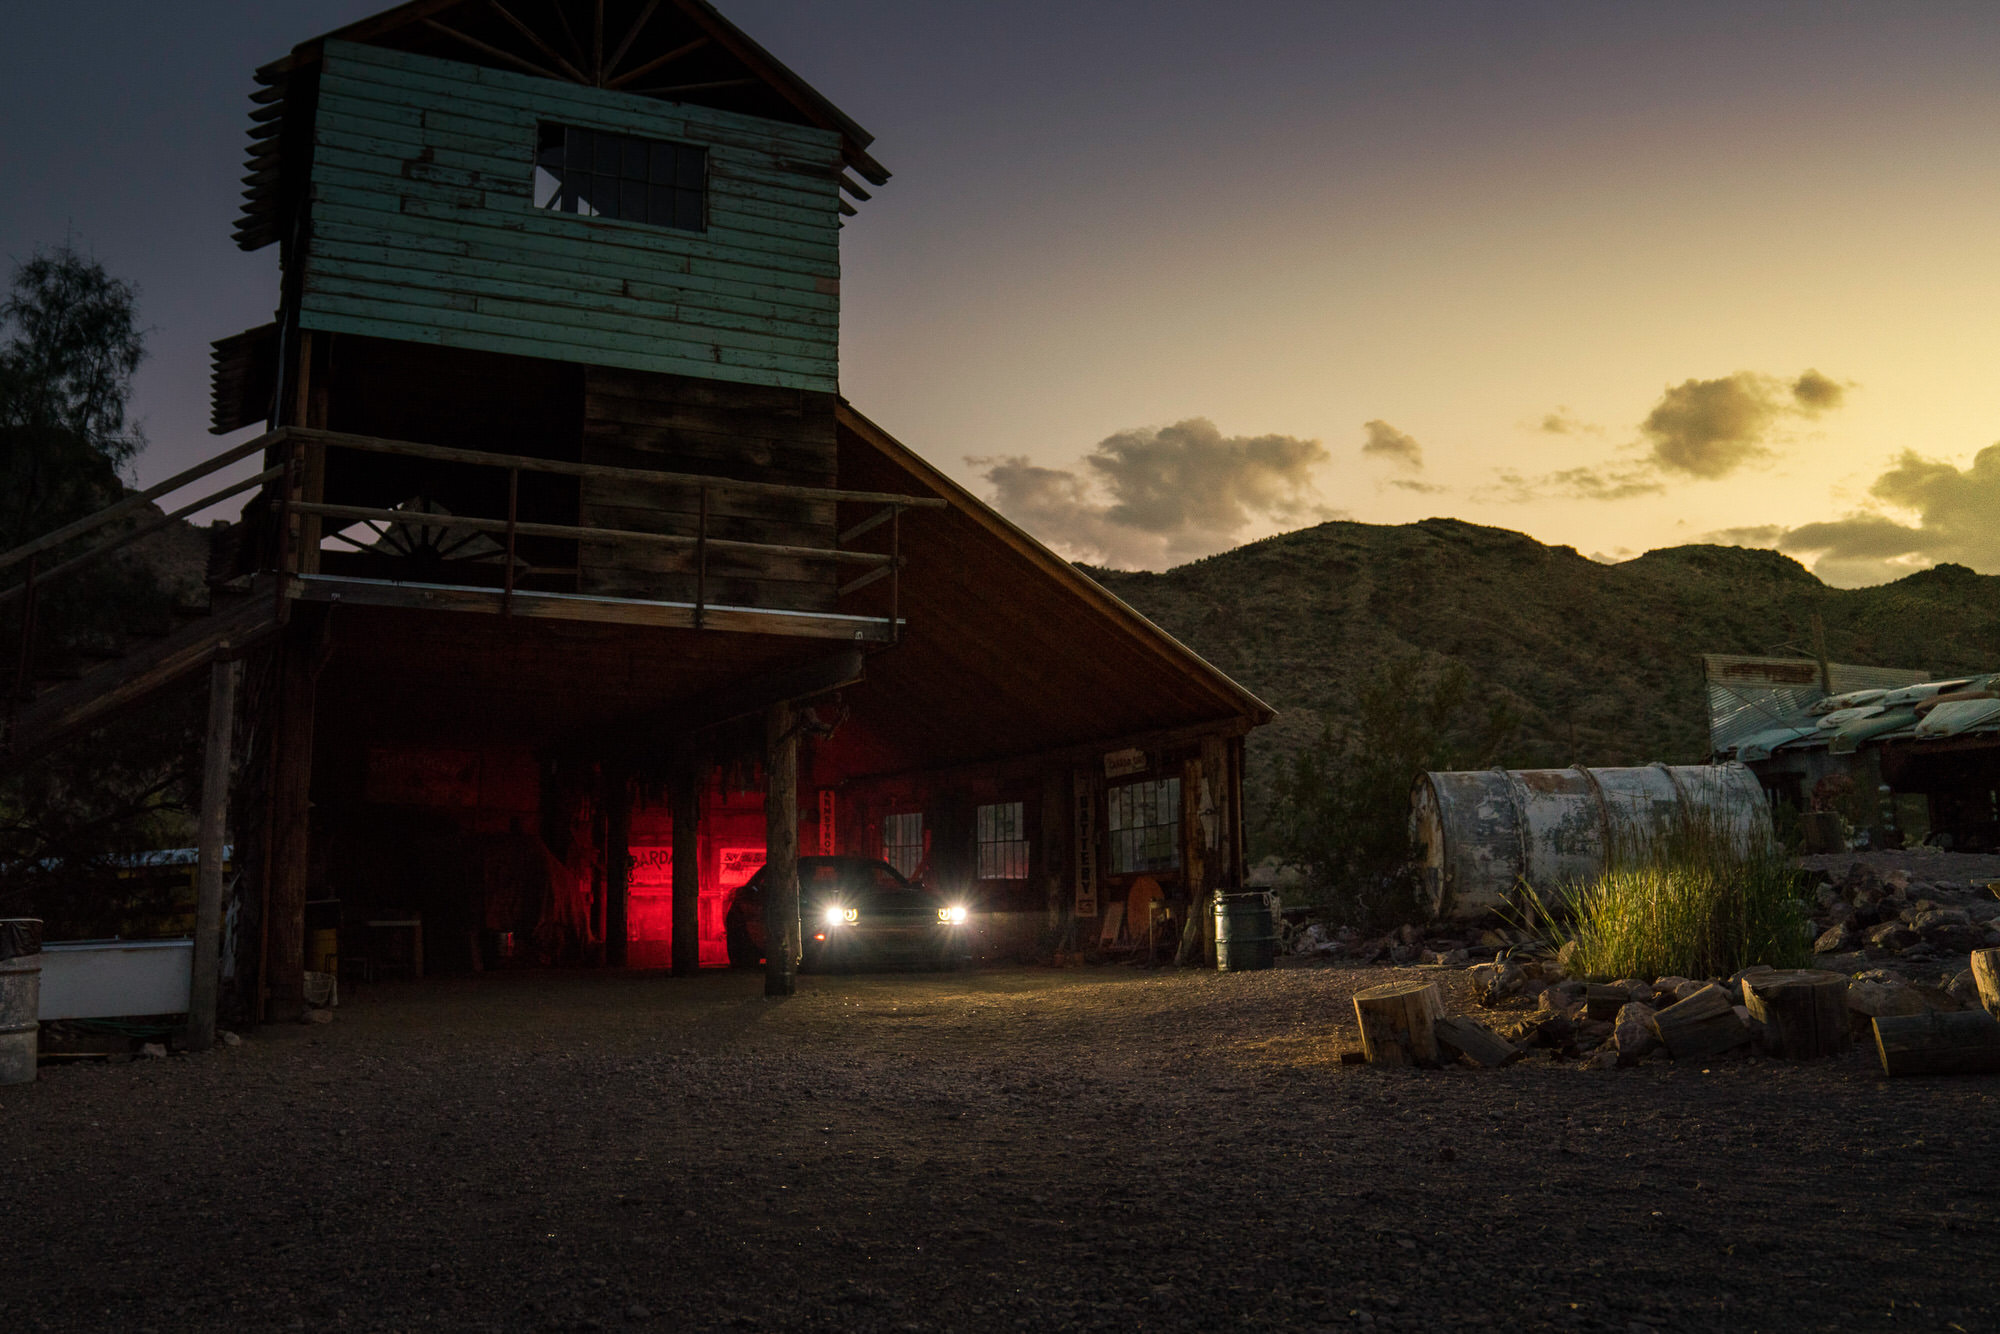 Dodge Demon in desert barn at sunset